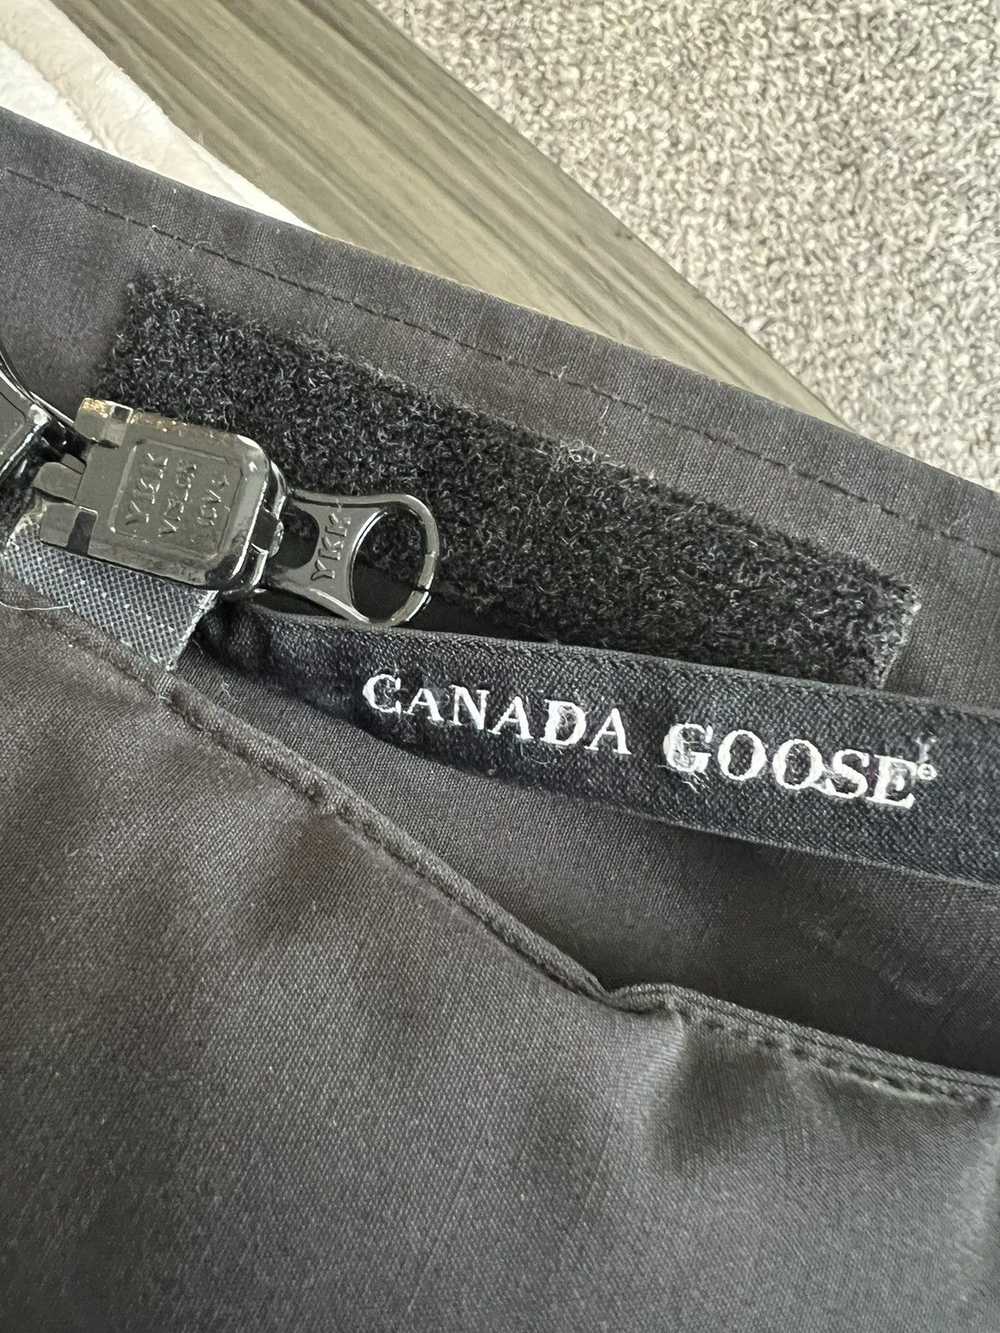 Canada Goose Canada Goose Parka Coyote Fur hood - image 8